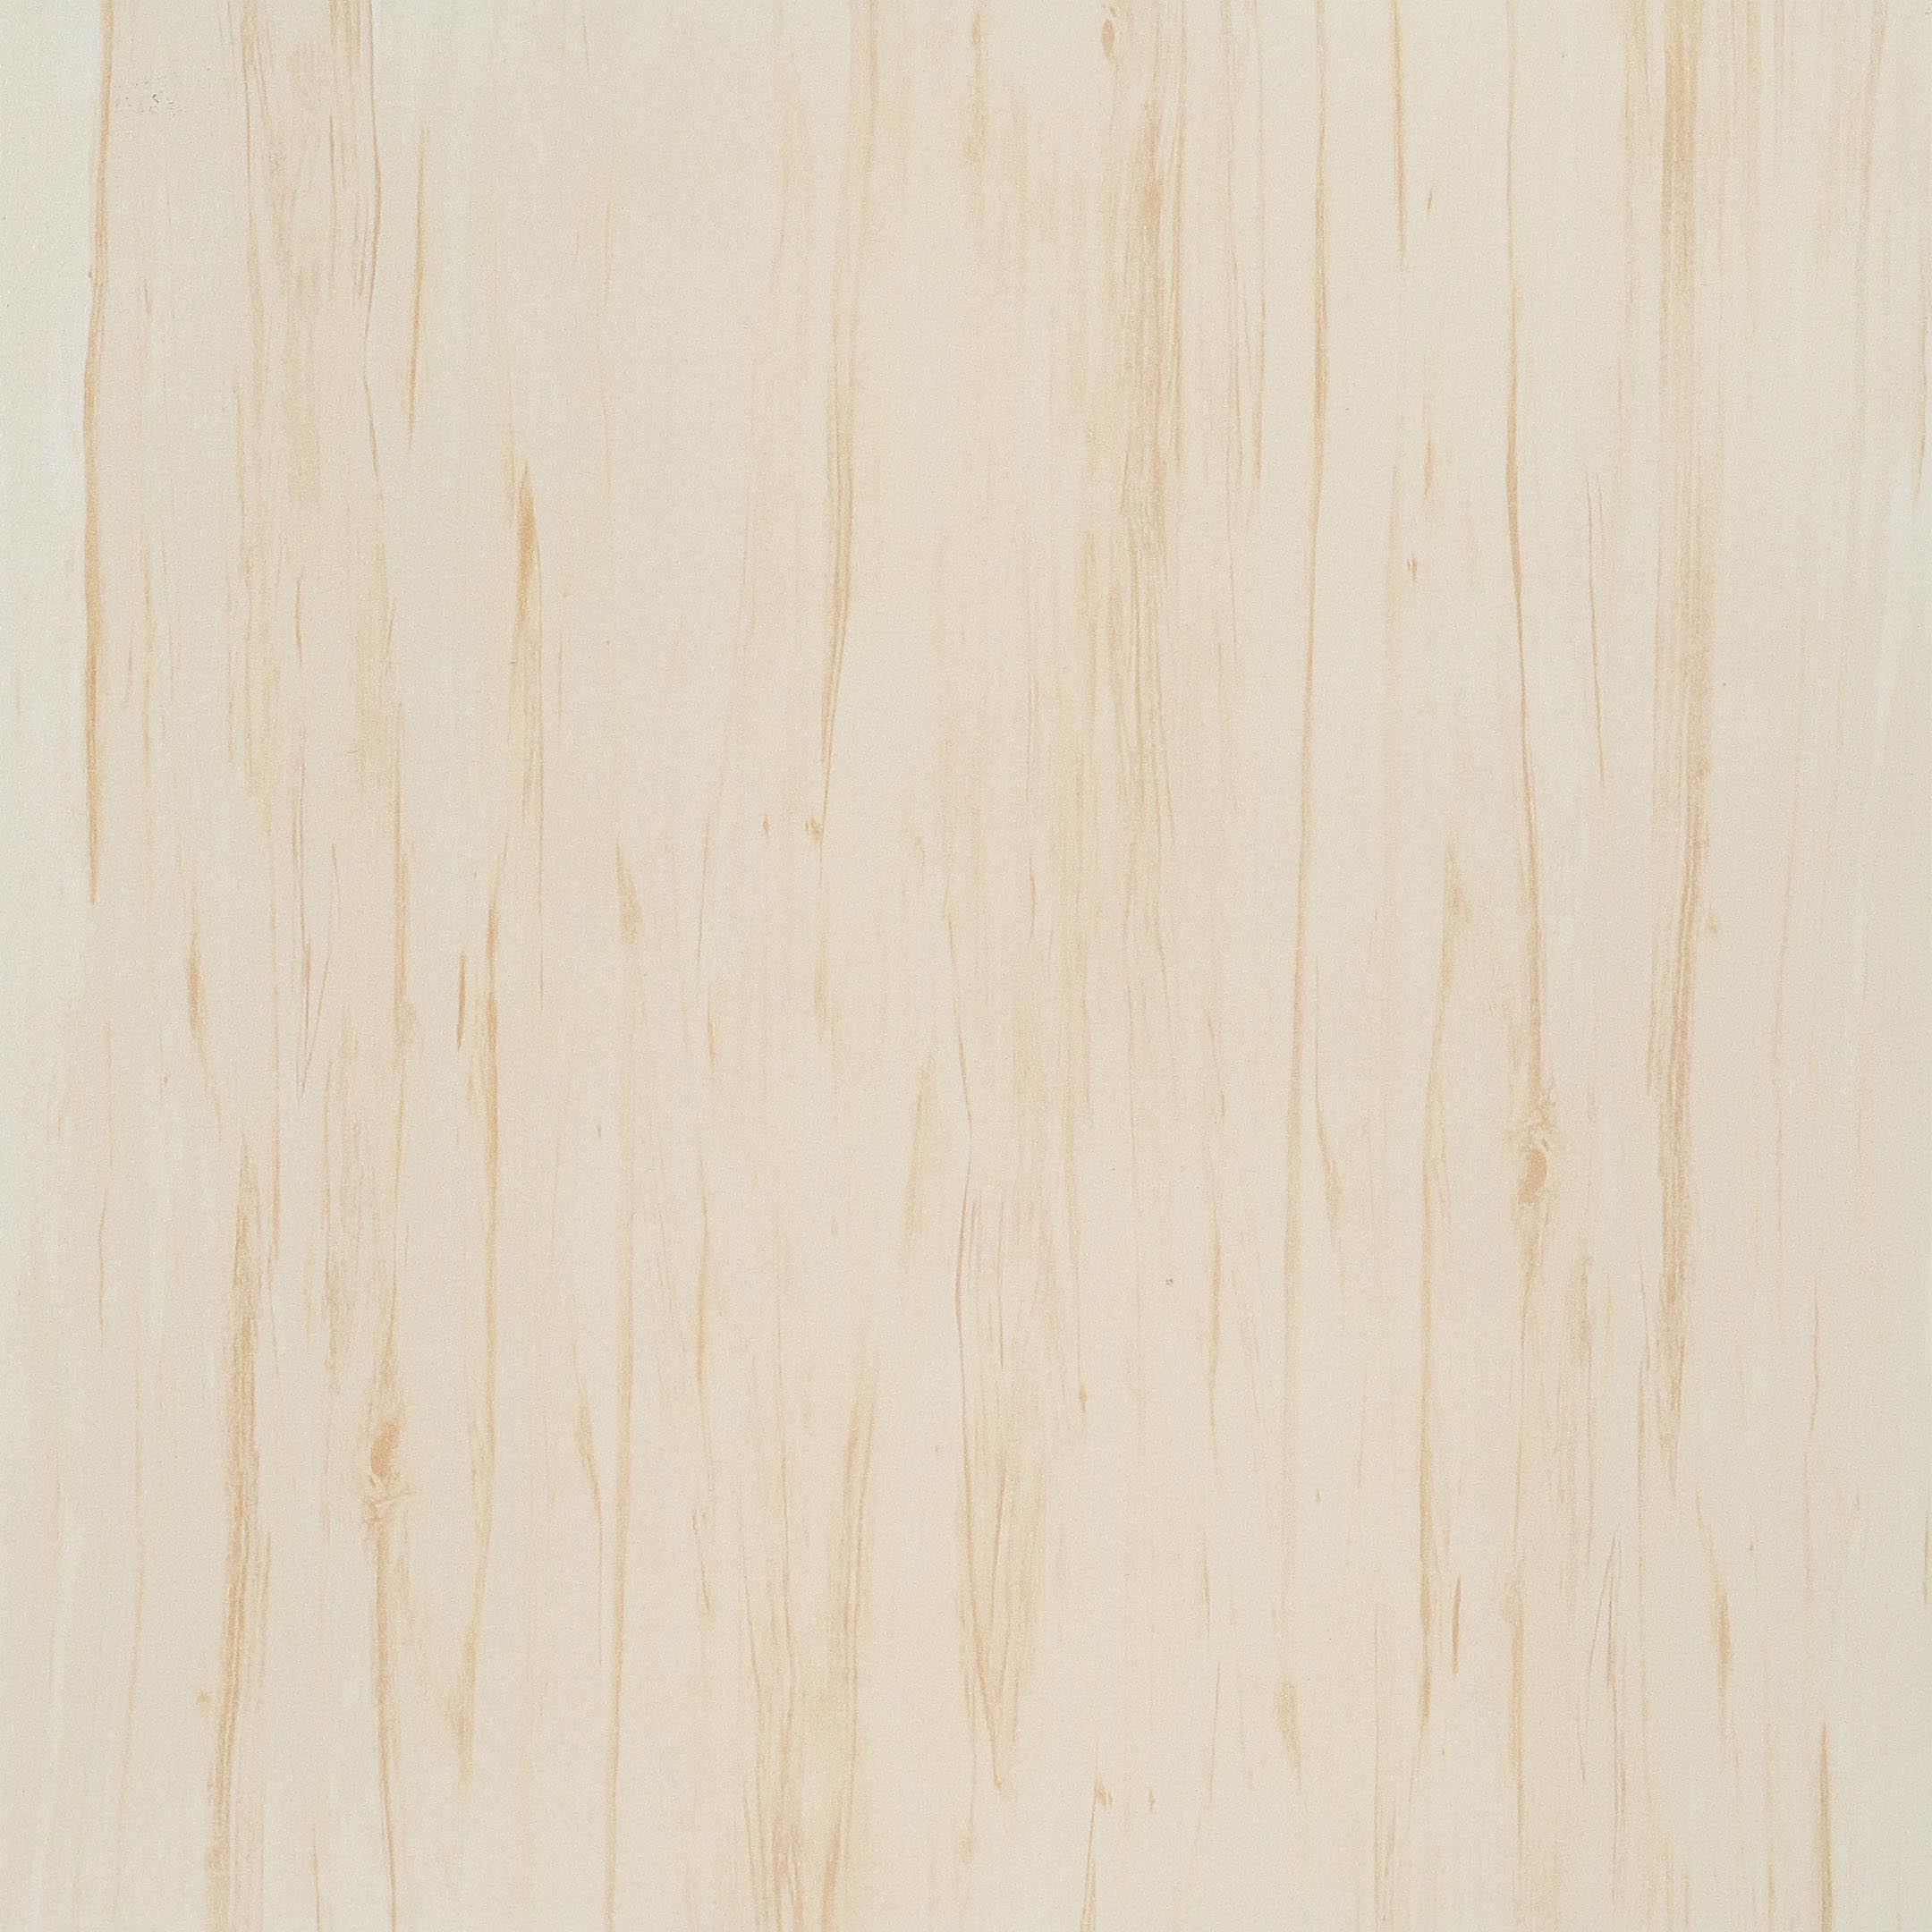 фото Керамогранит cersanit botanica коричневый 420x420x8,5 мм (9 шт.=1,58 кв.м)